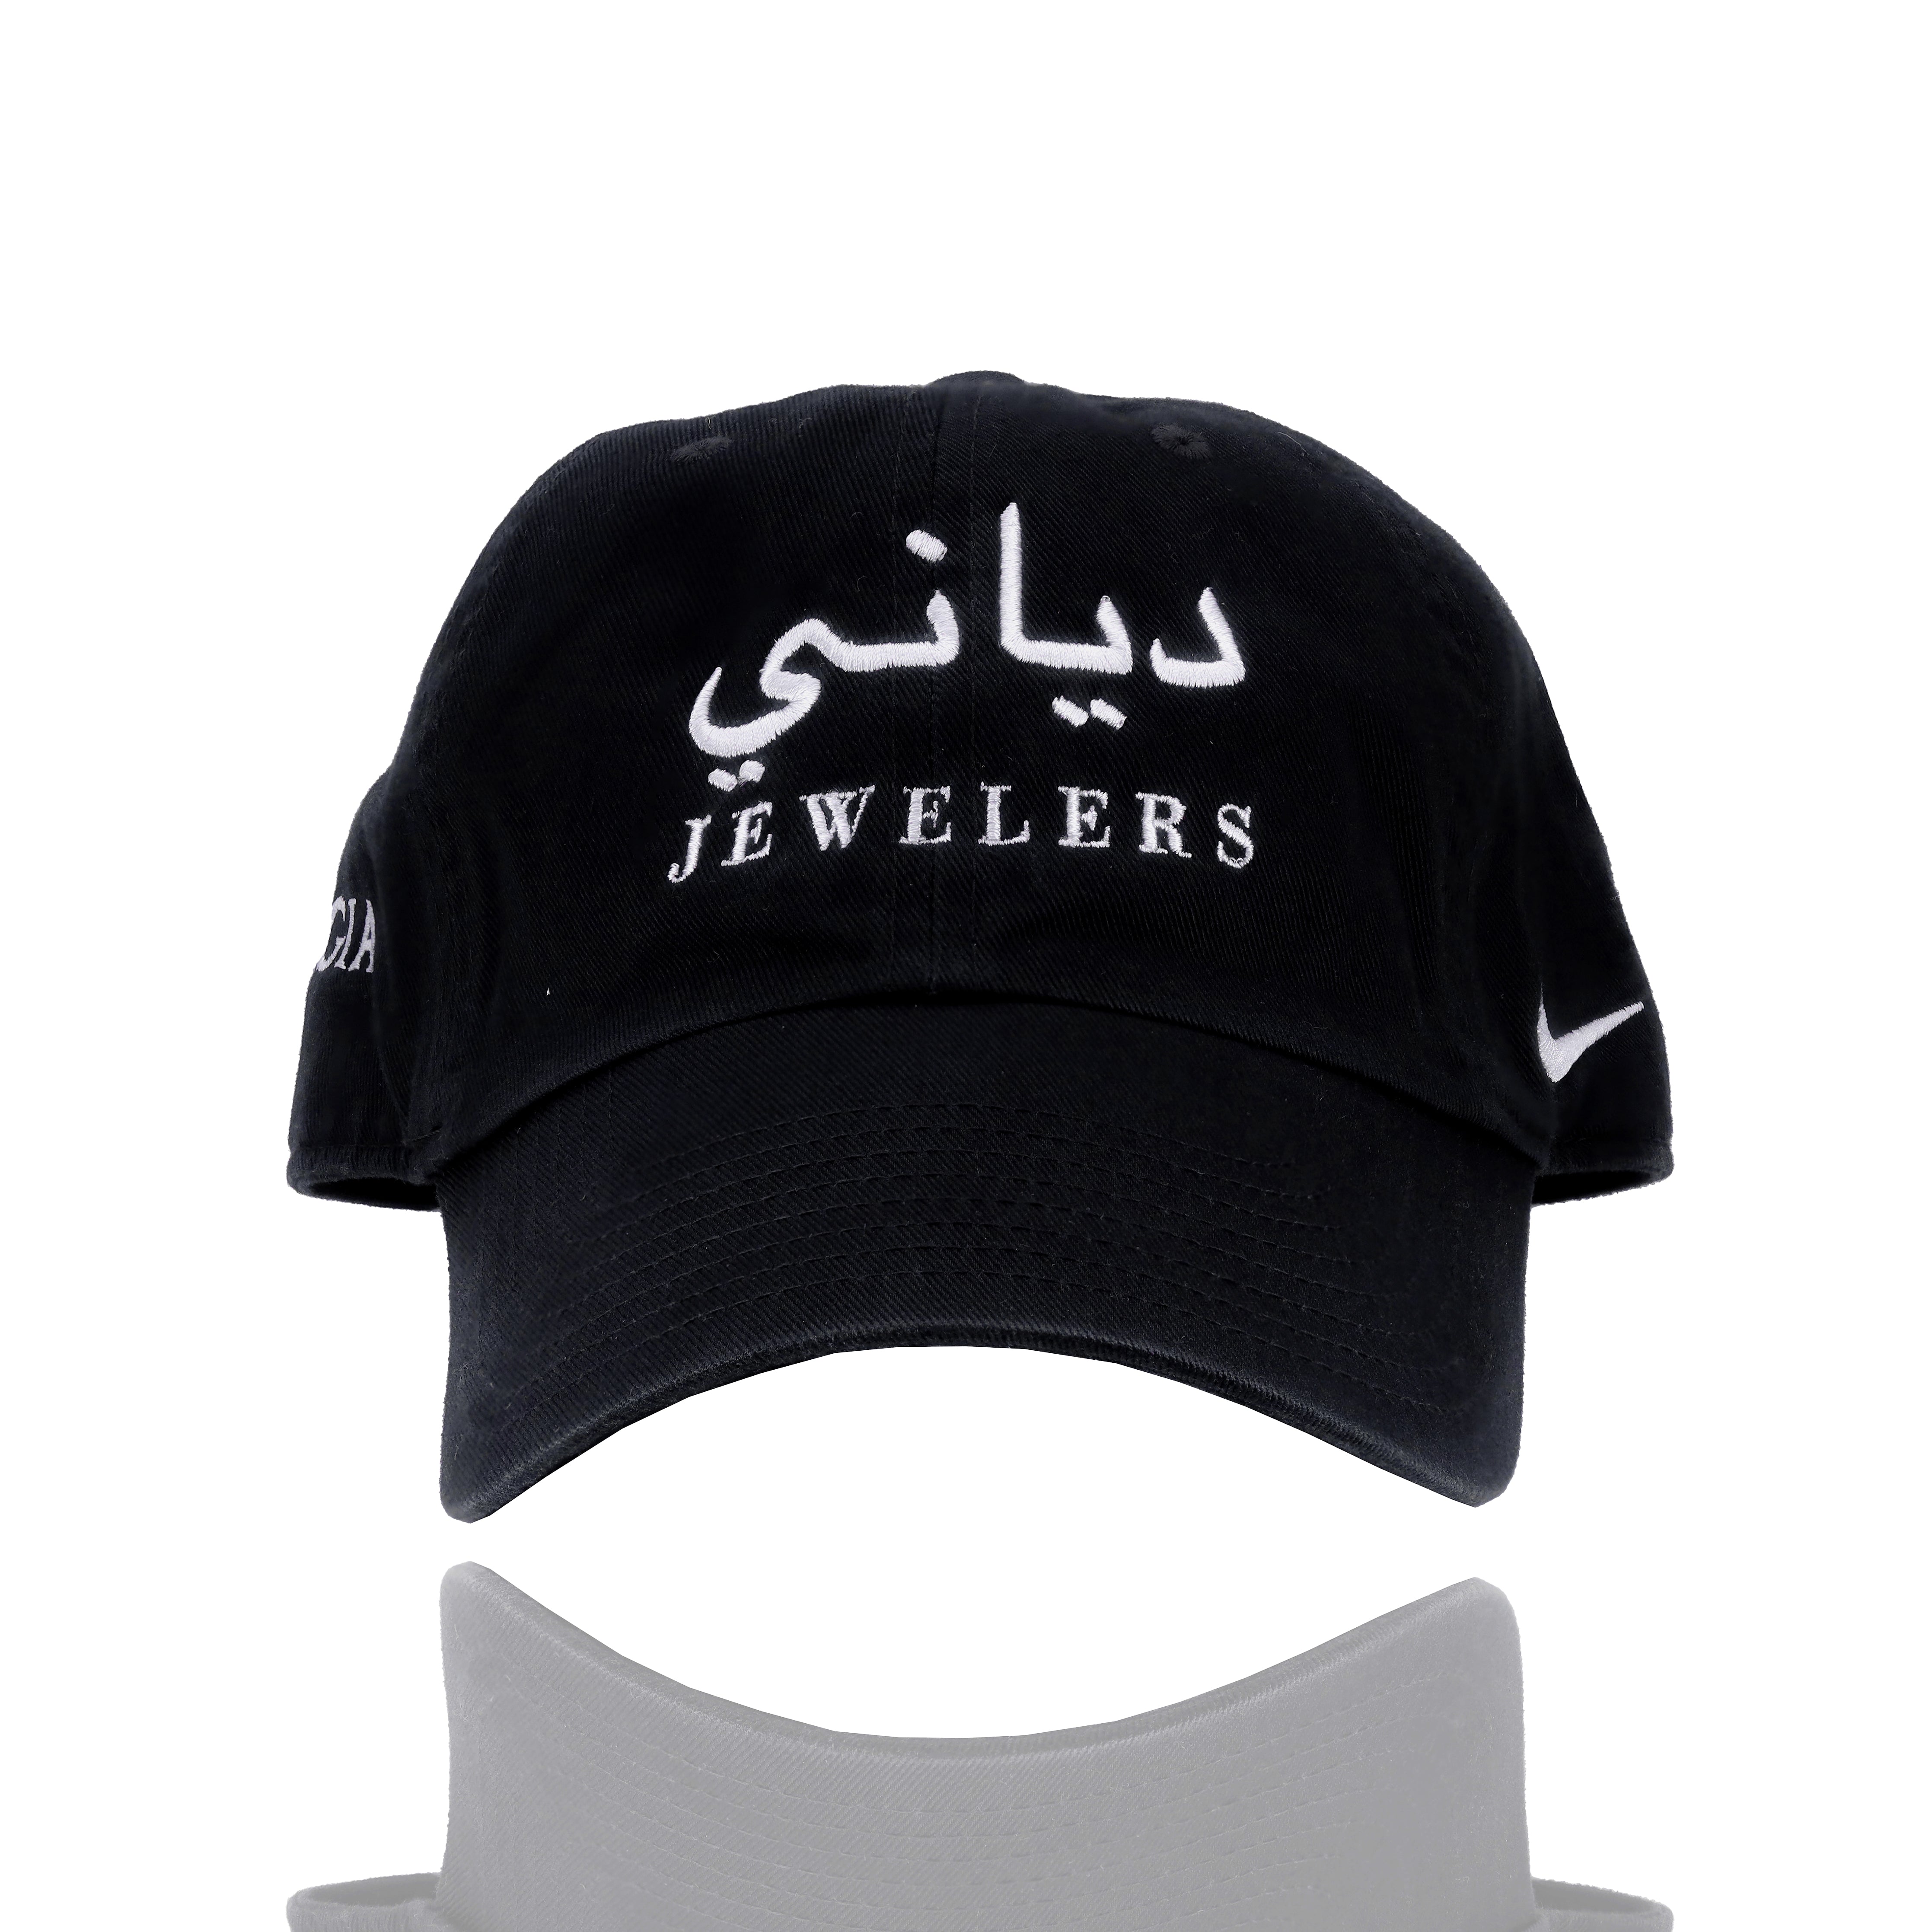 Farsi/Arabic Dayyani Jewelers Nike Hat w/ GIA Diamond Symbol